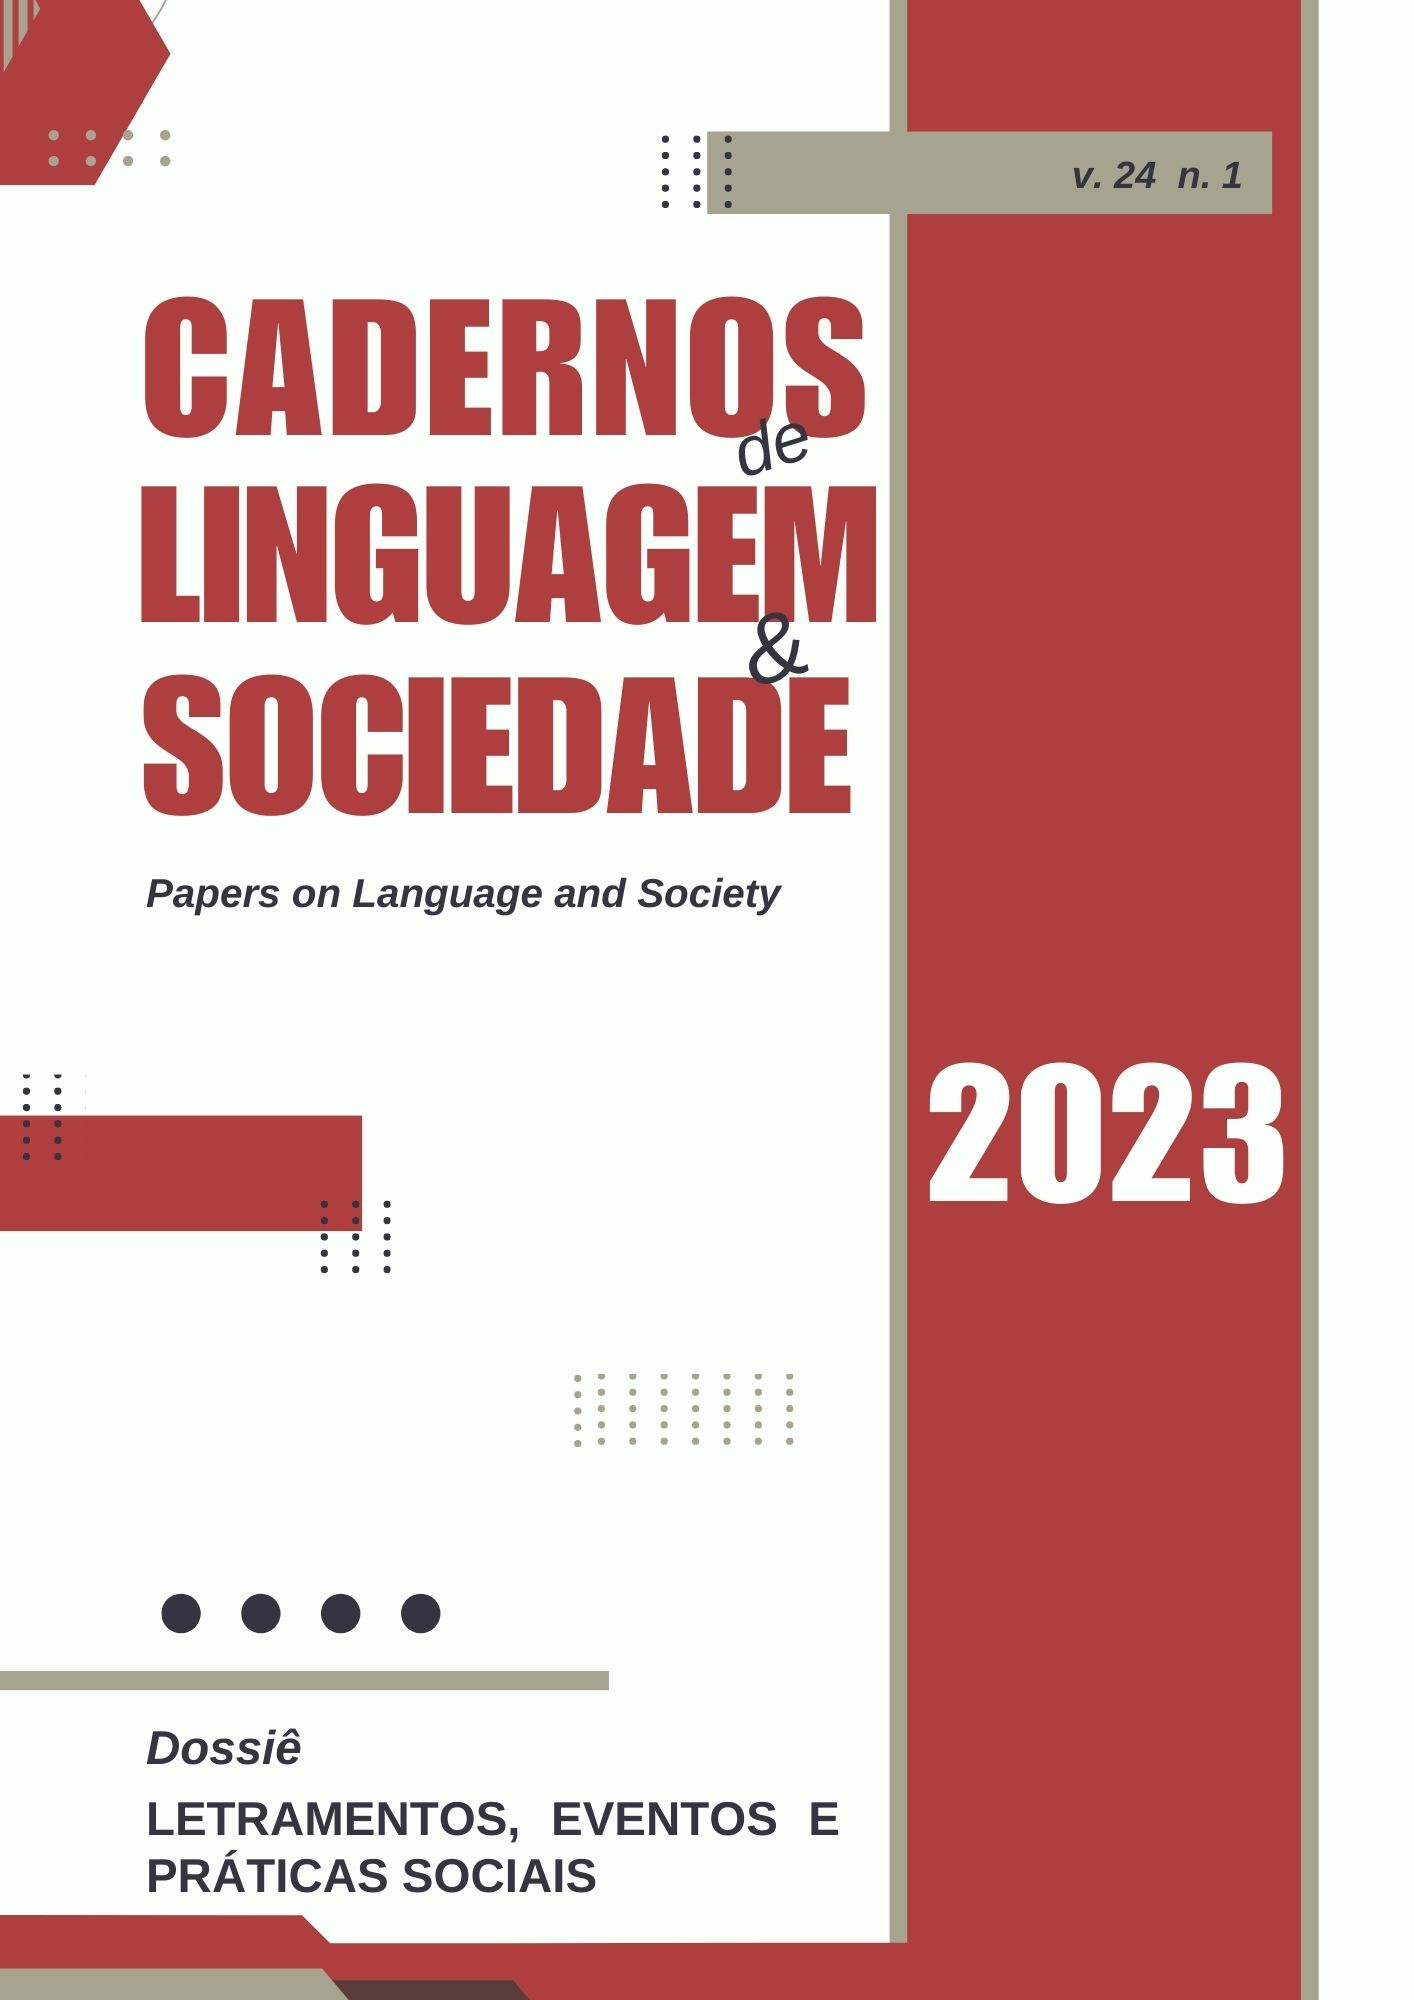 Mestra - Dicio, Dicionário Online de Português